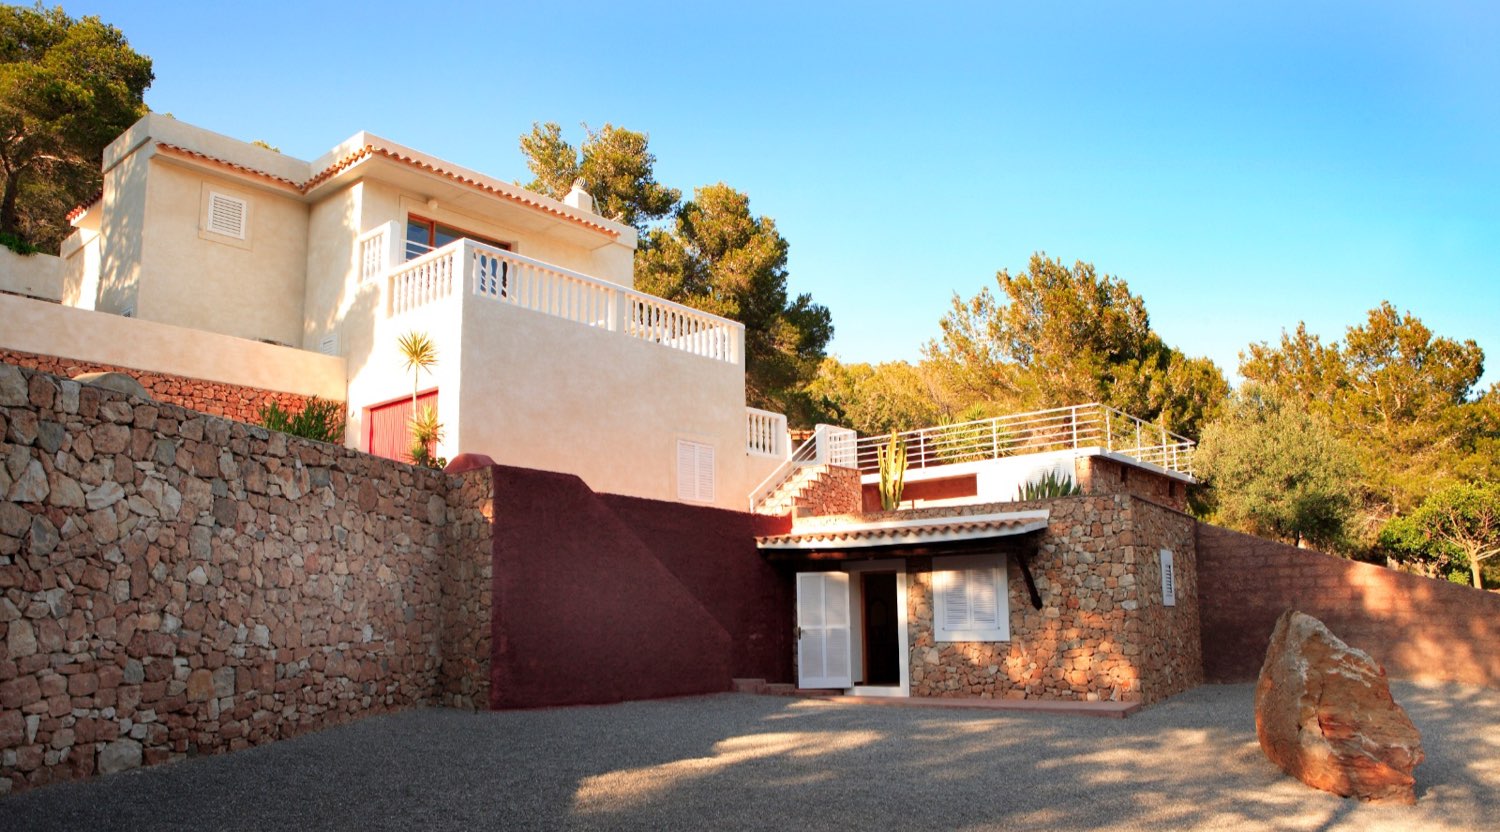 Villa zum verkauf in Sant Jordi de Ses Salines (Sant Josep de sa Talaia)